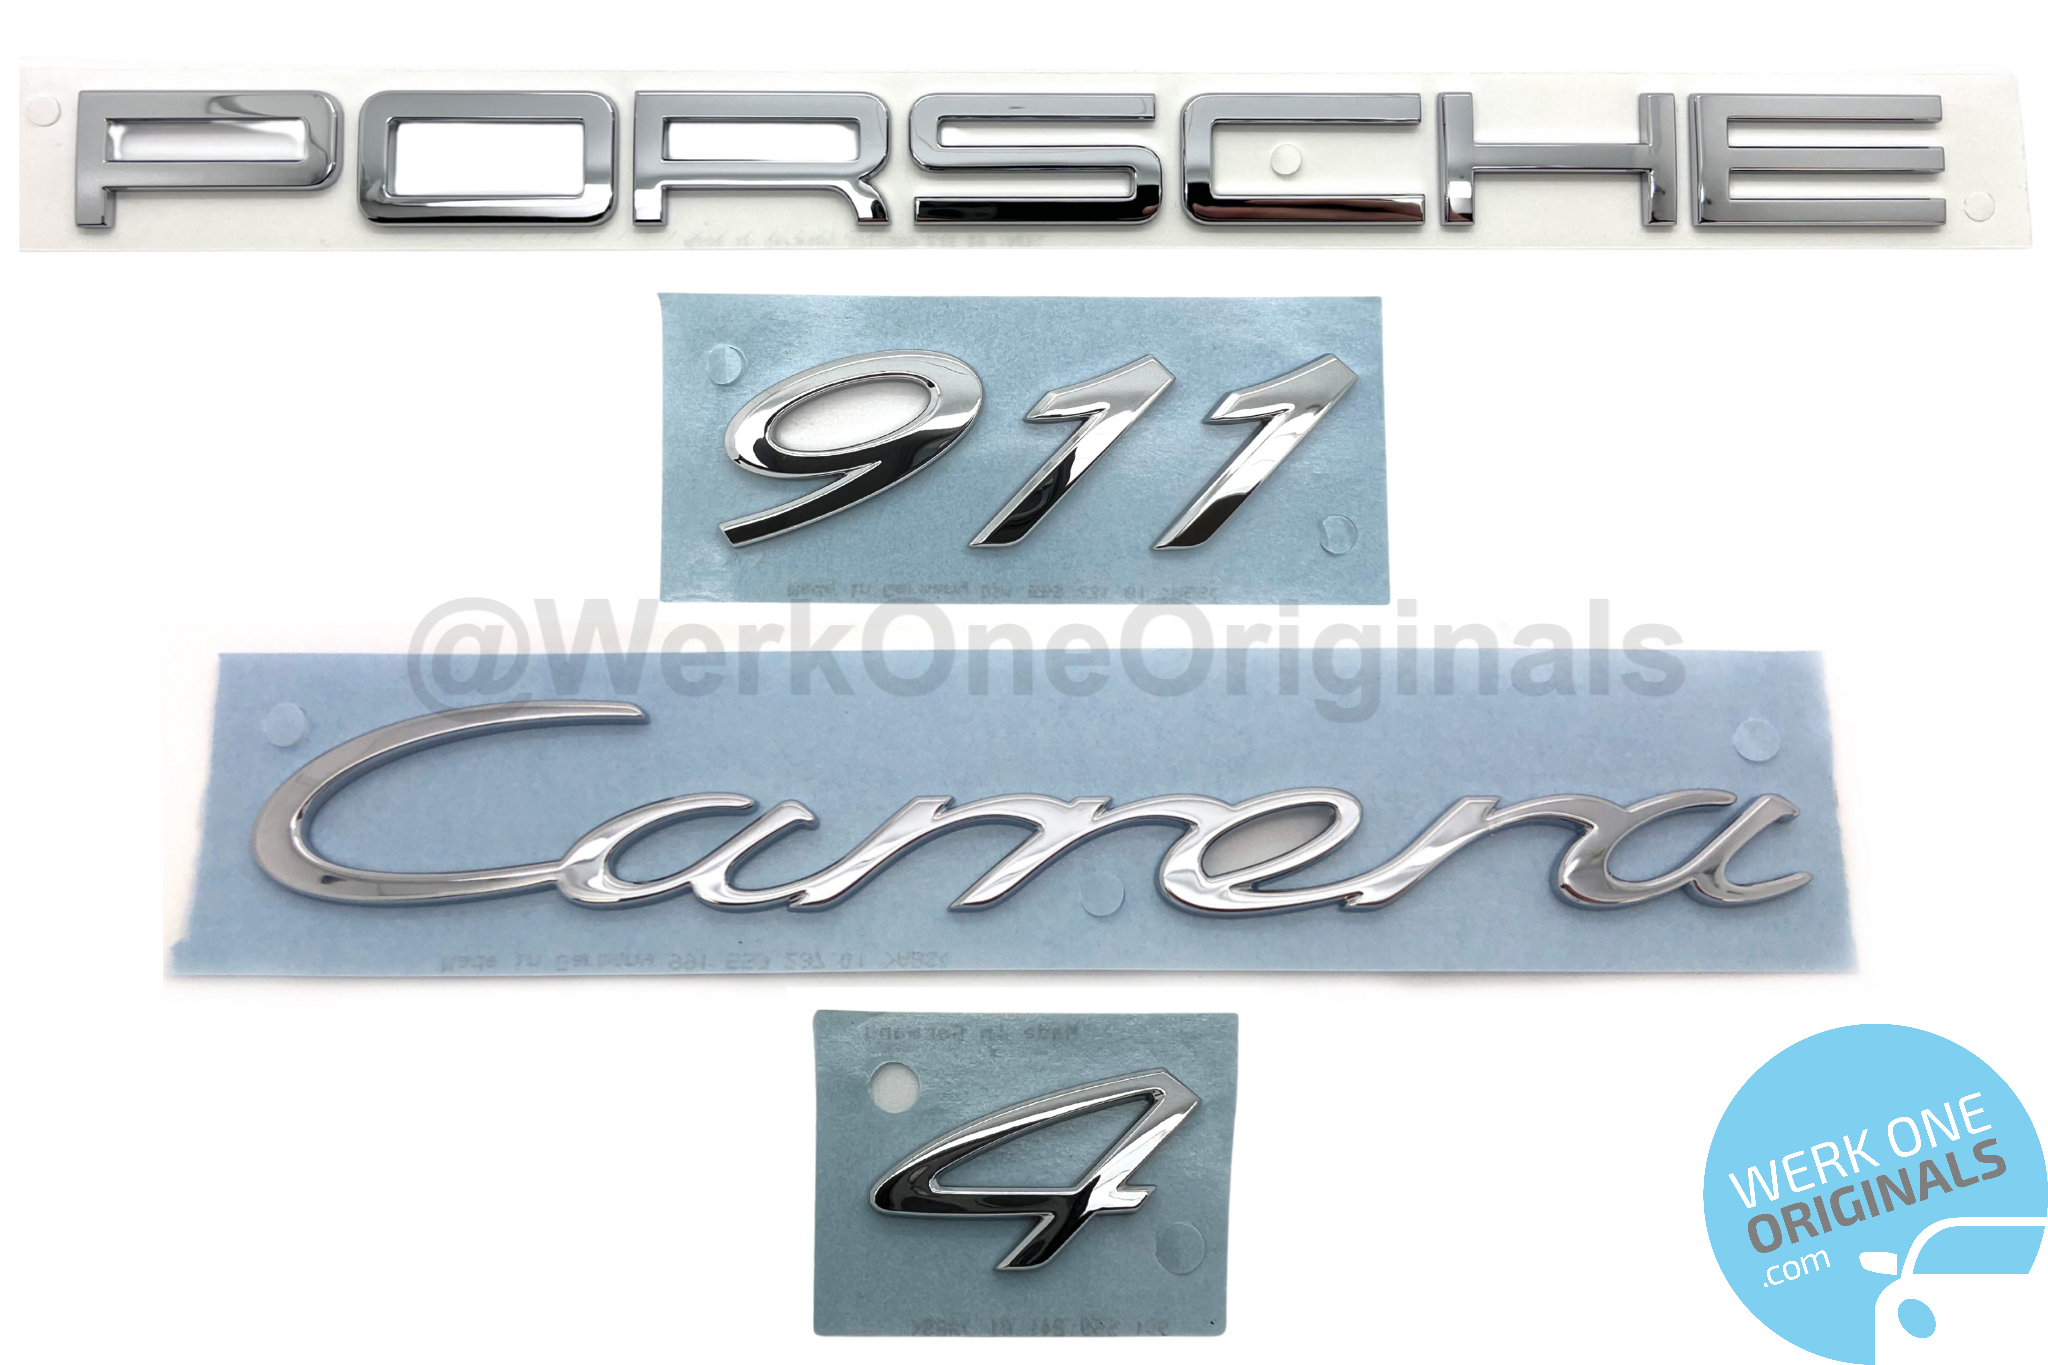 Porsche Official 'Porsche 911 Carrera 4' Rear Badge Decal in Chrome Silver for 911 Type 991 Carrera 4 Models